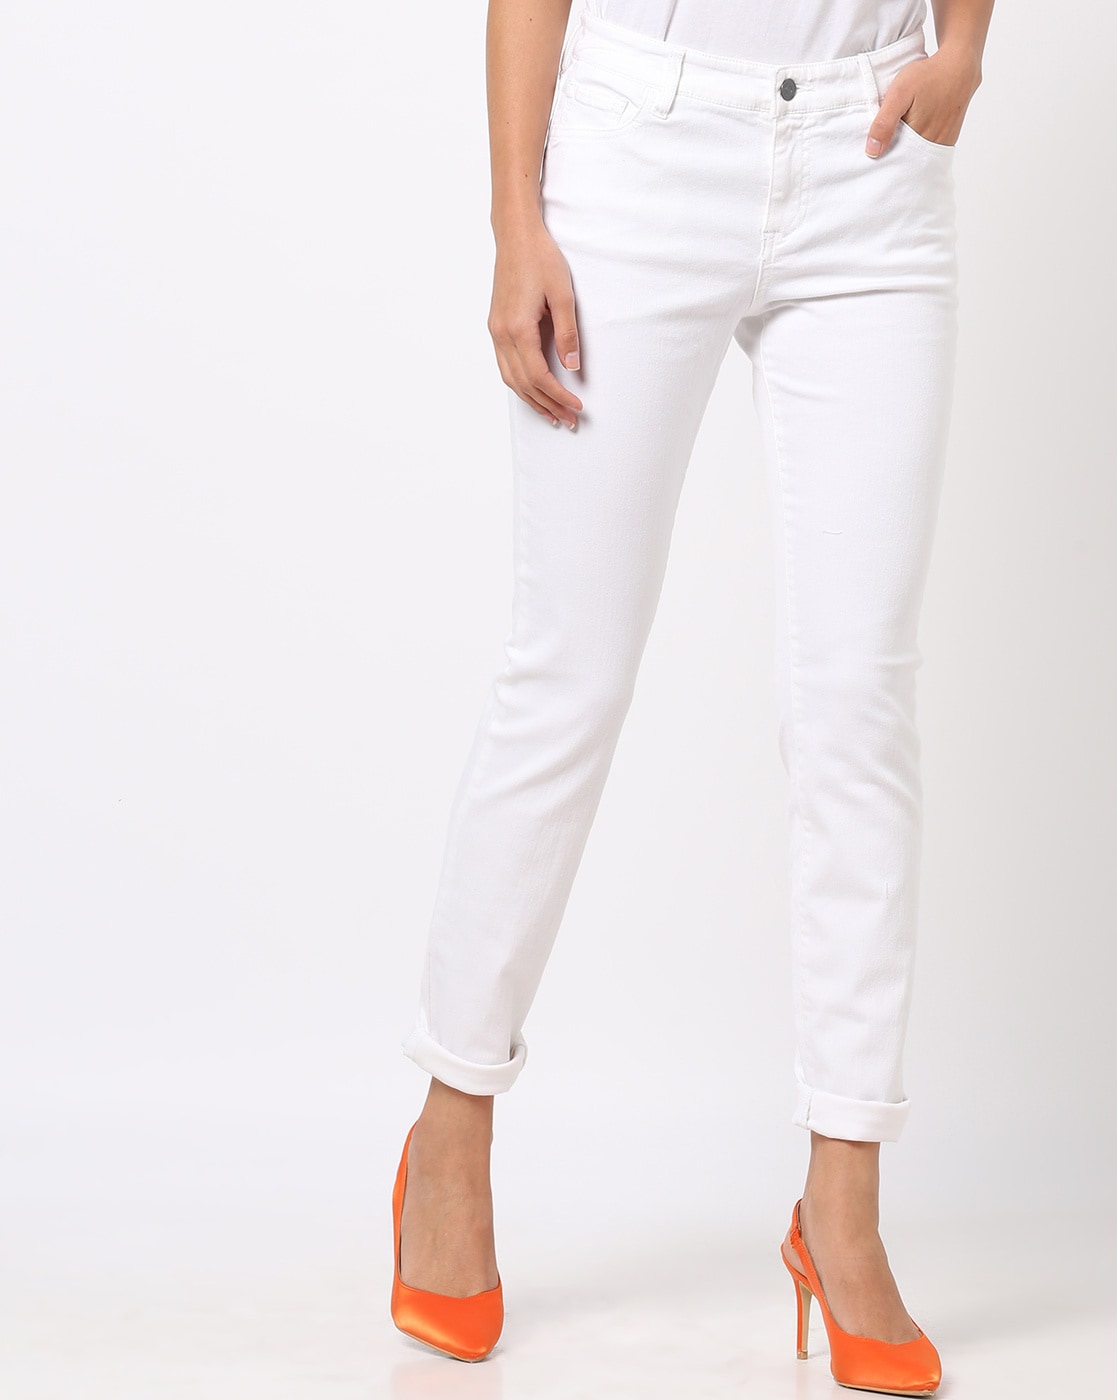 Buy White Ankle Length Jeans For Women Online - Spykar